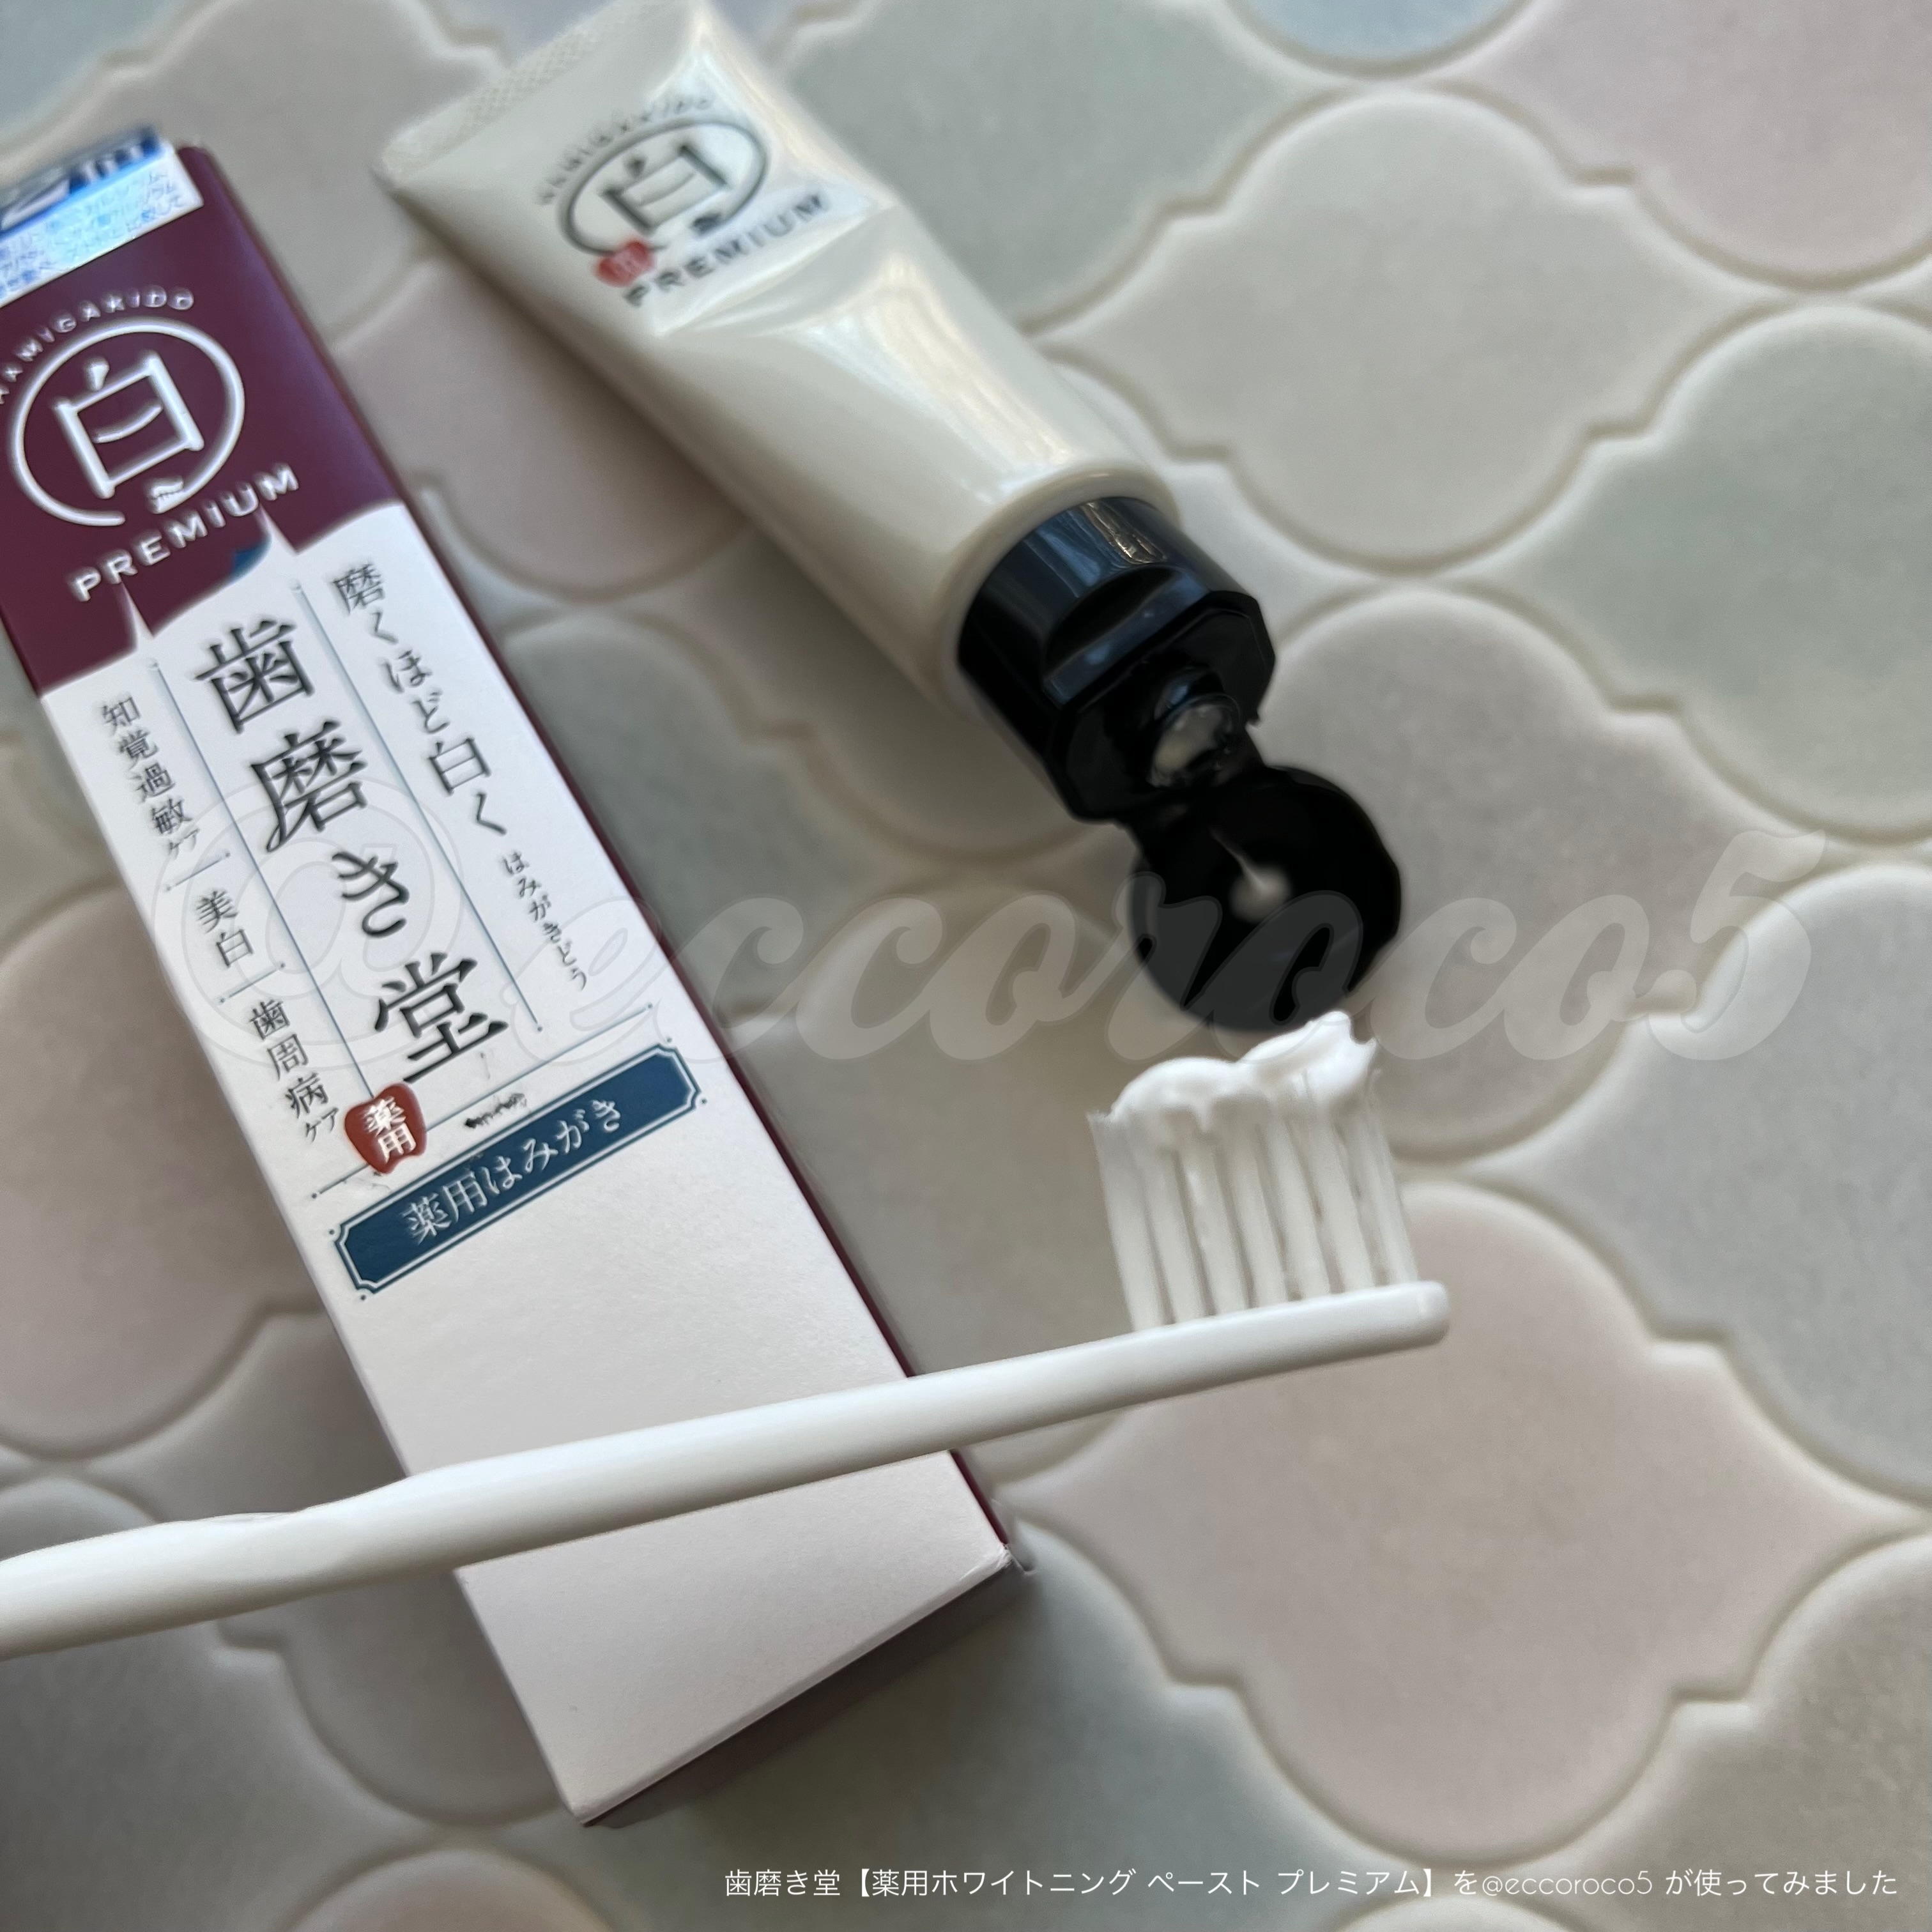 歯磨き堂(HAMIGAKIDO) 薬用ホワイトニング ペースト プレミアムに関する@eccoroco5さんの口コミ画像1